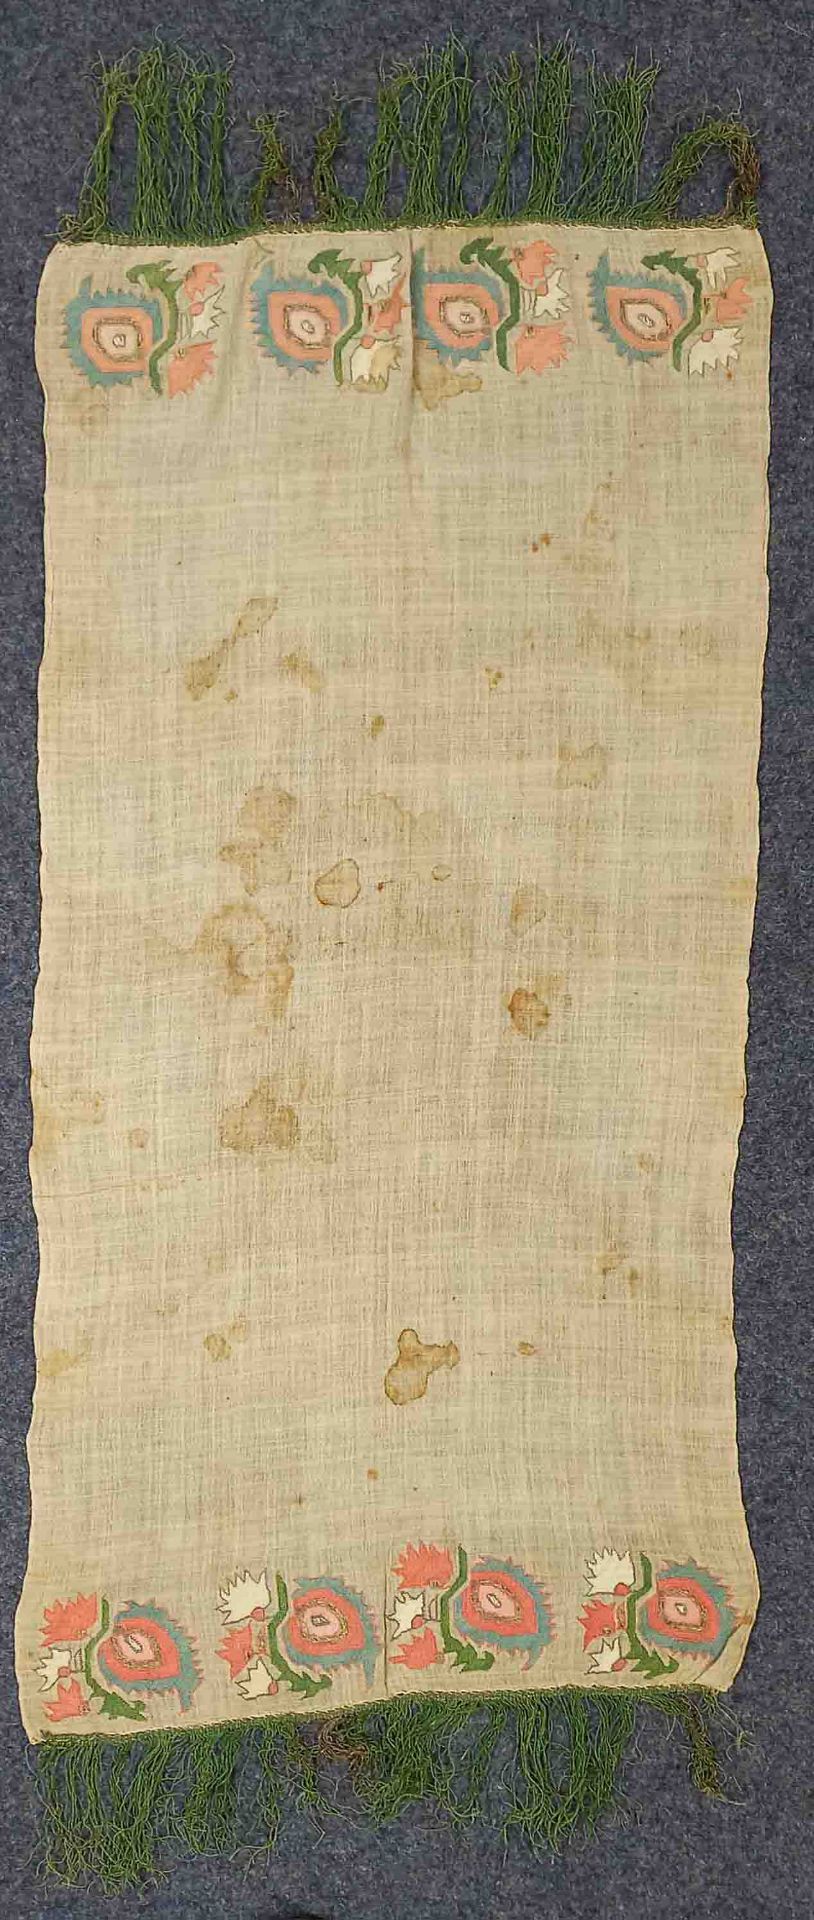 3 x Schal / Handtuch. Osmanisches Reich. 19. Jahrhundert. - Bild 13 aus 16